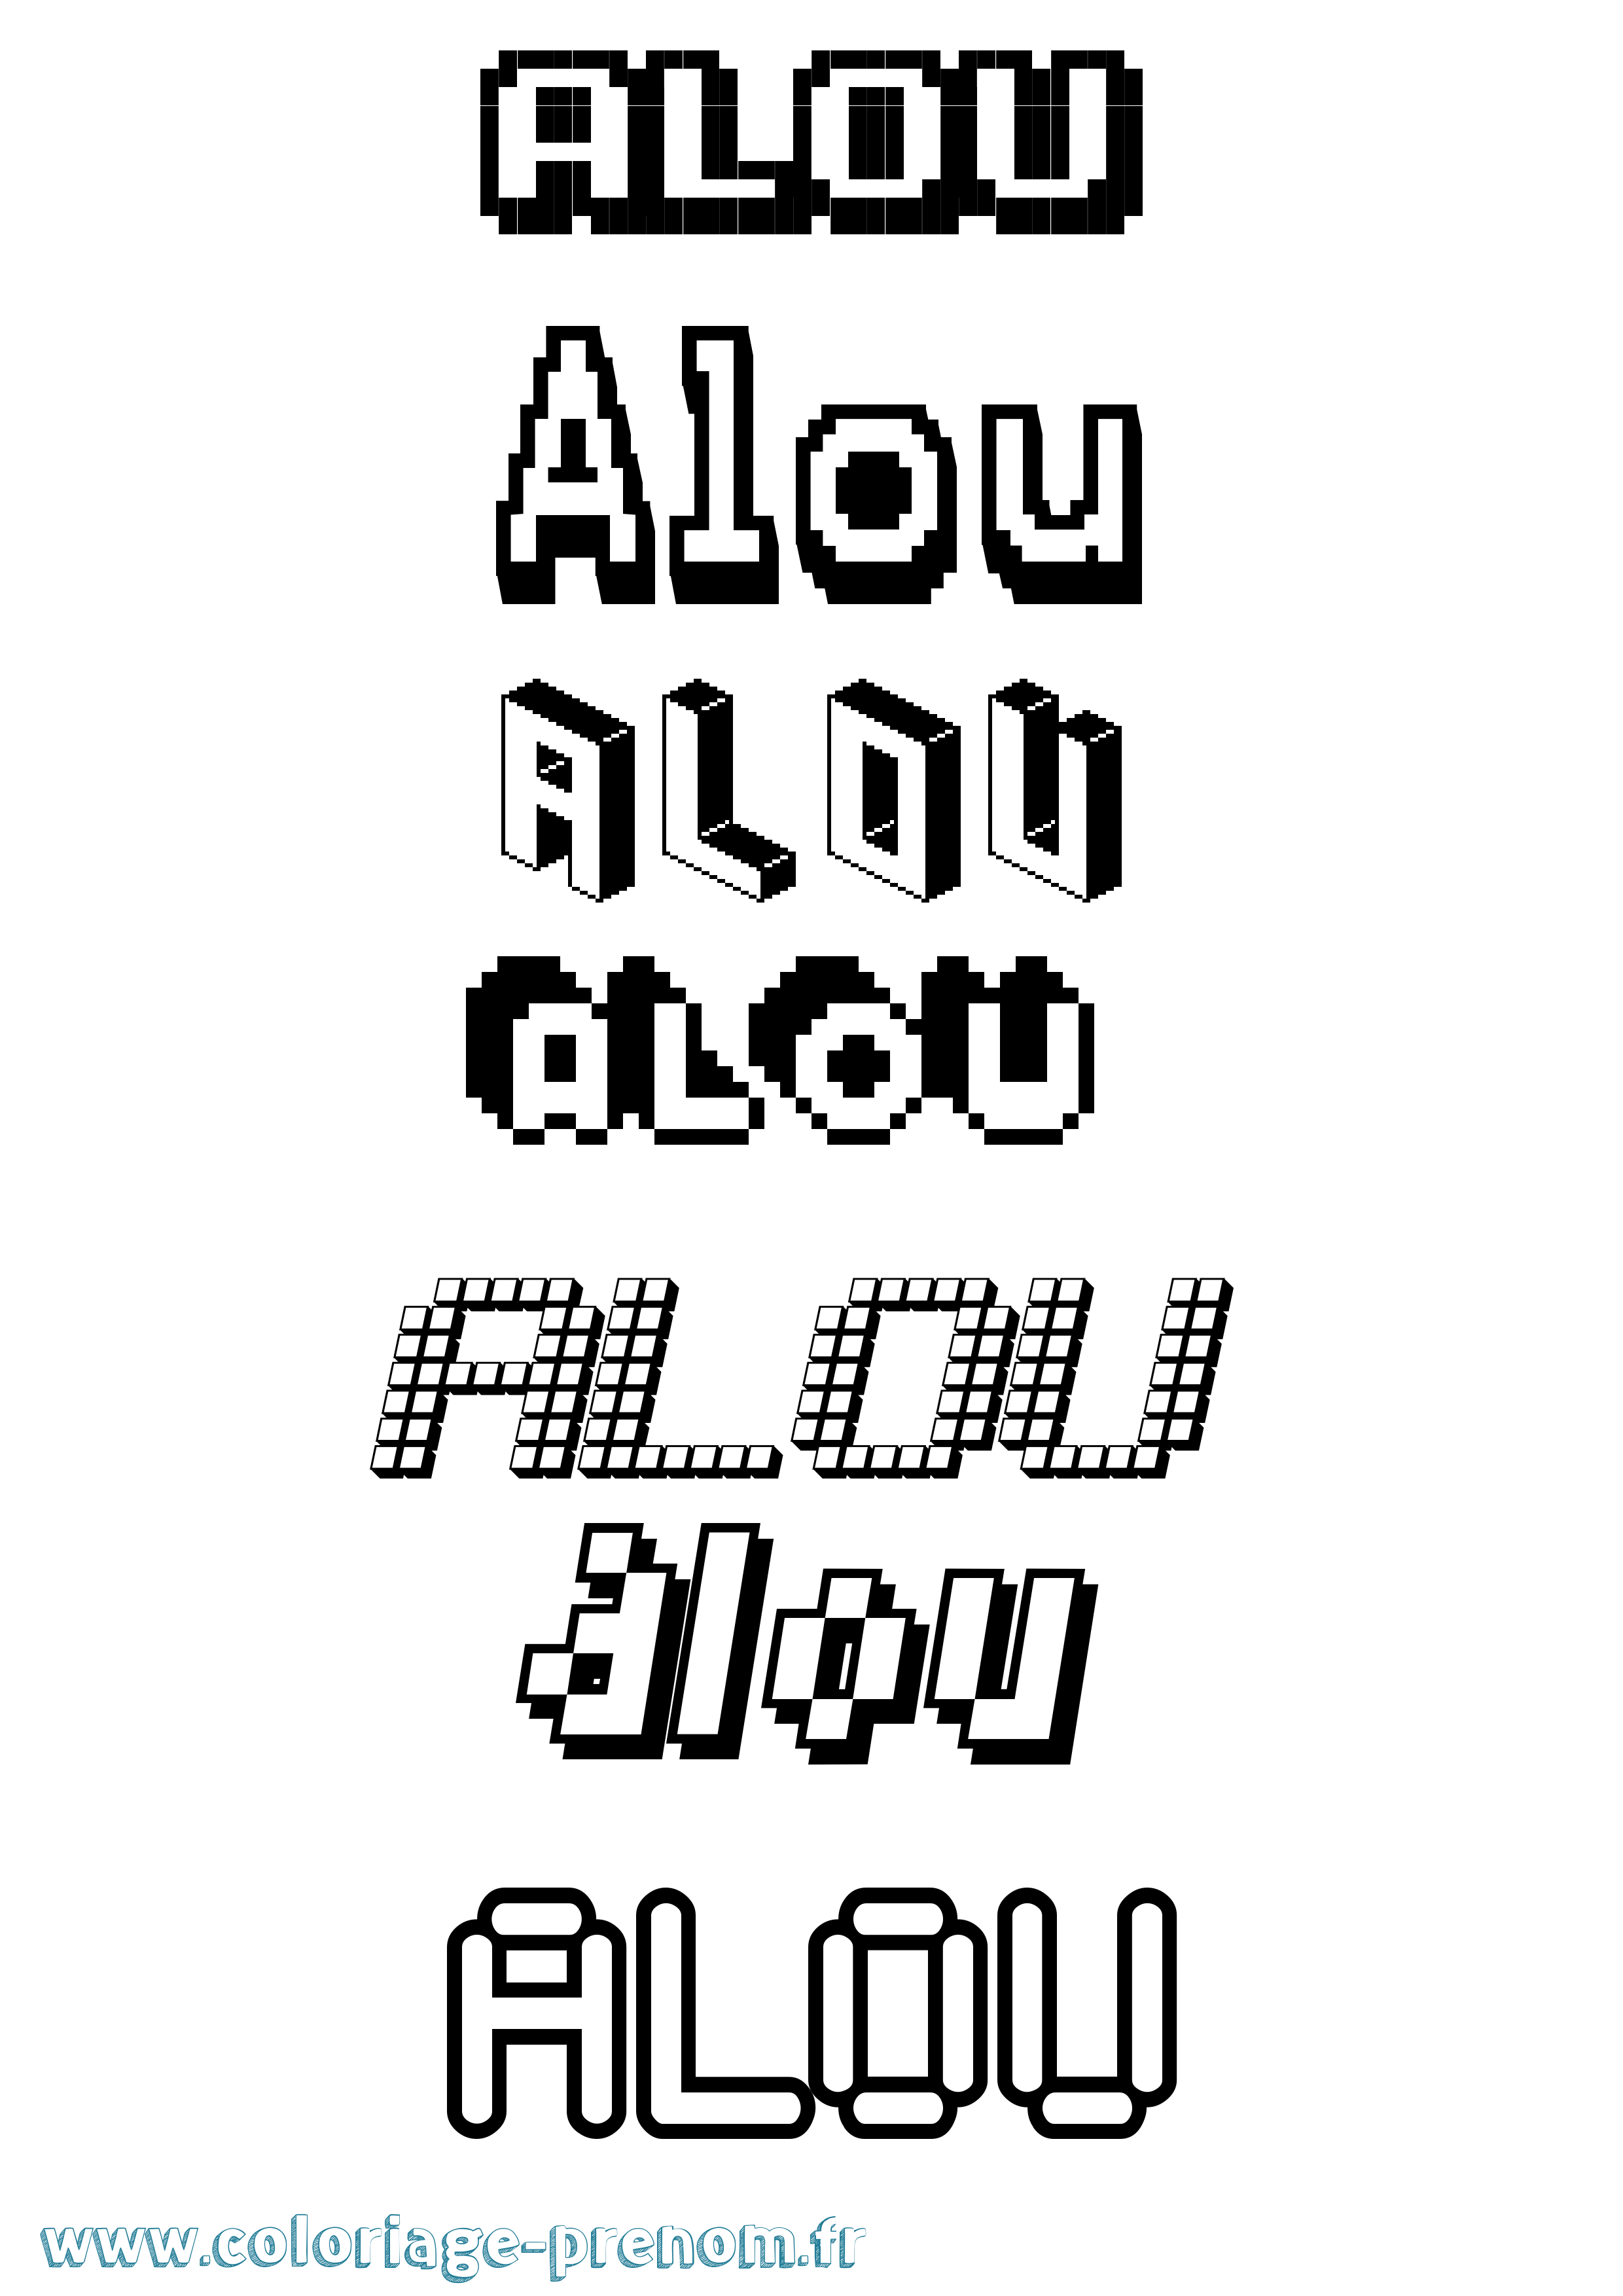 Coloriage prénom Alou Pixel